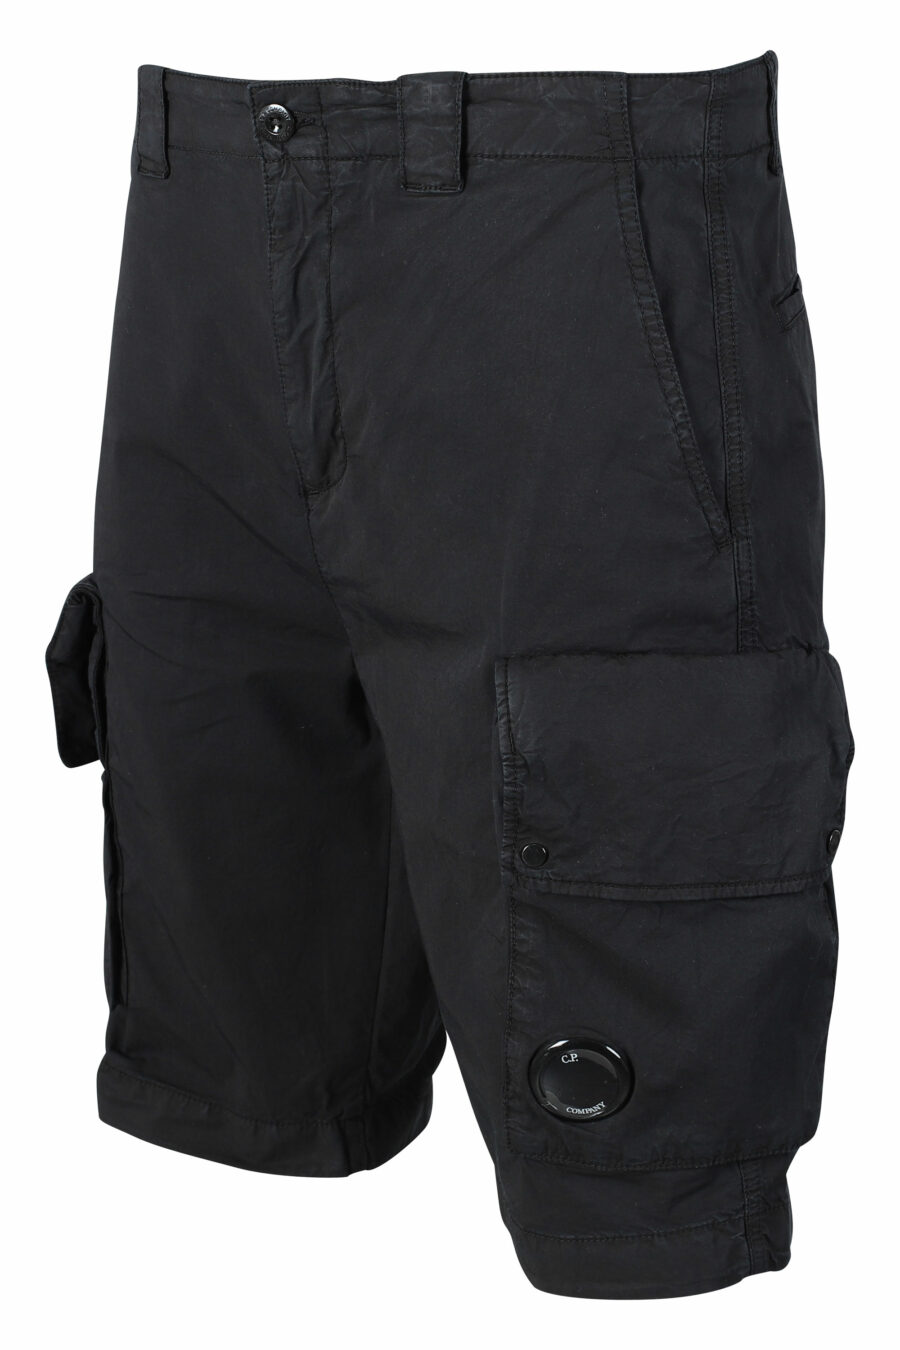 Short noir avec poches latérales et mini logo circulaire - IMG 9483